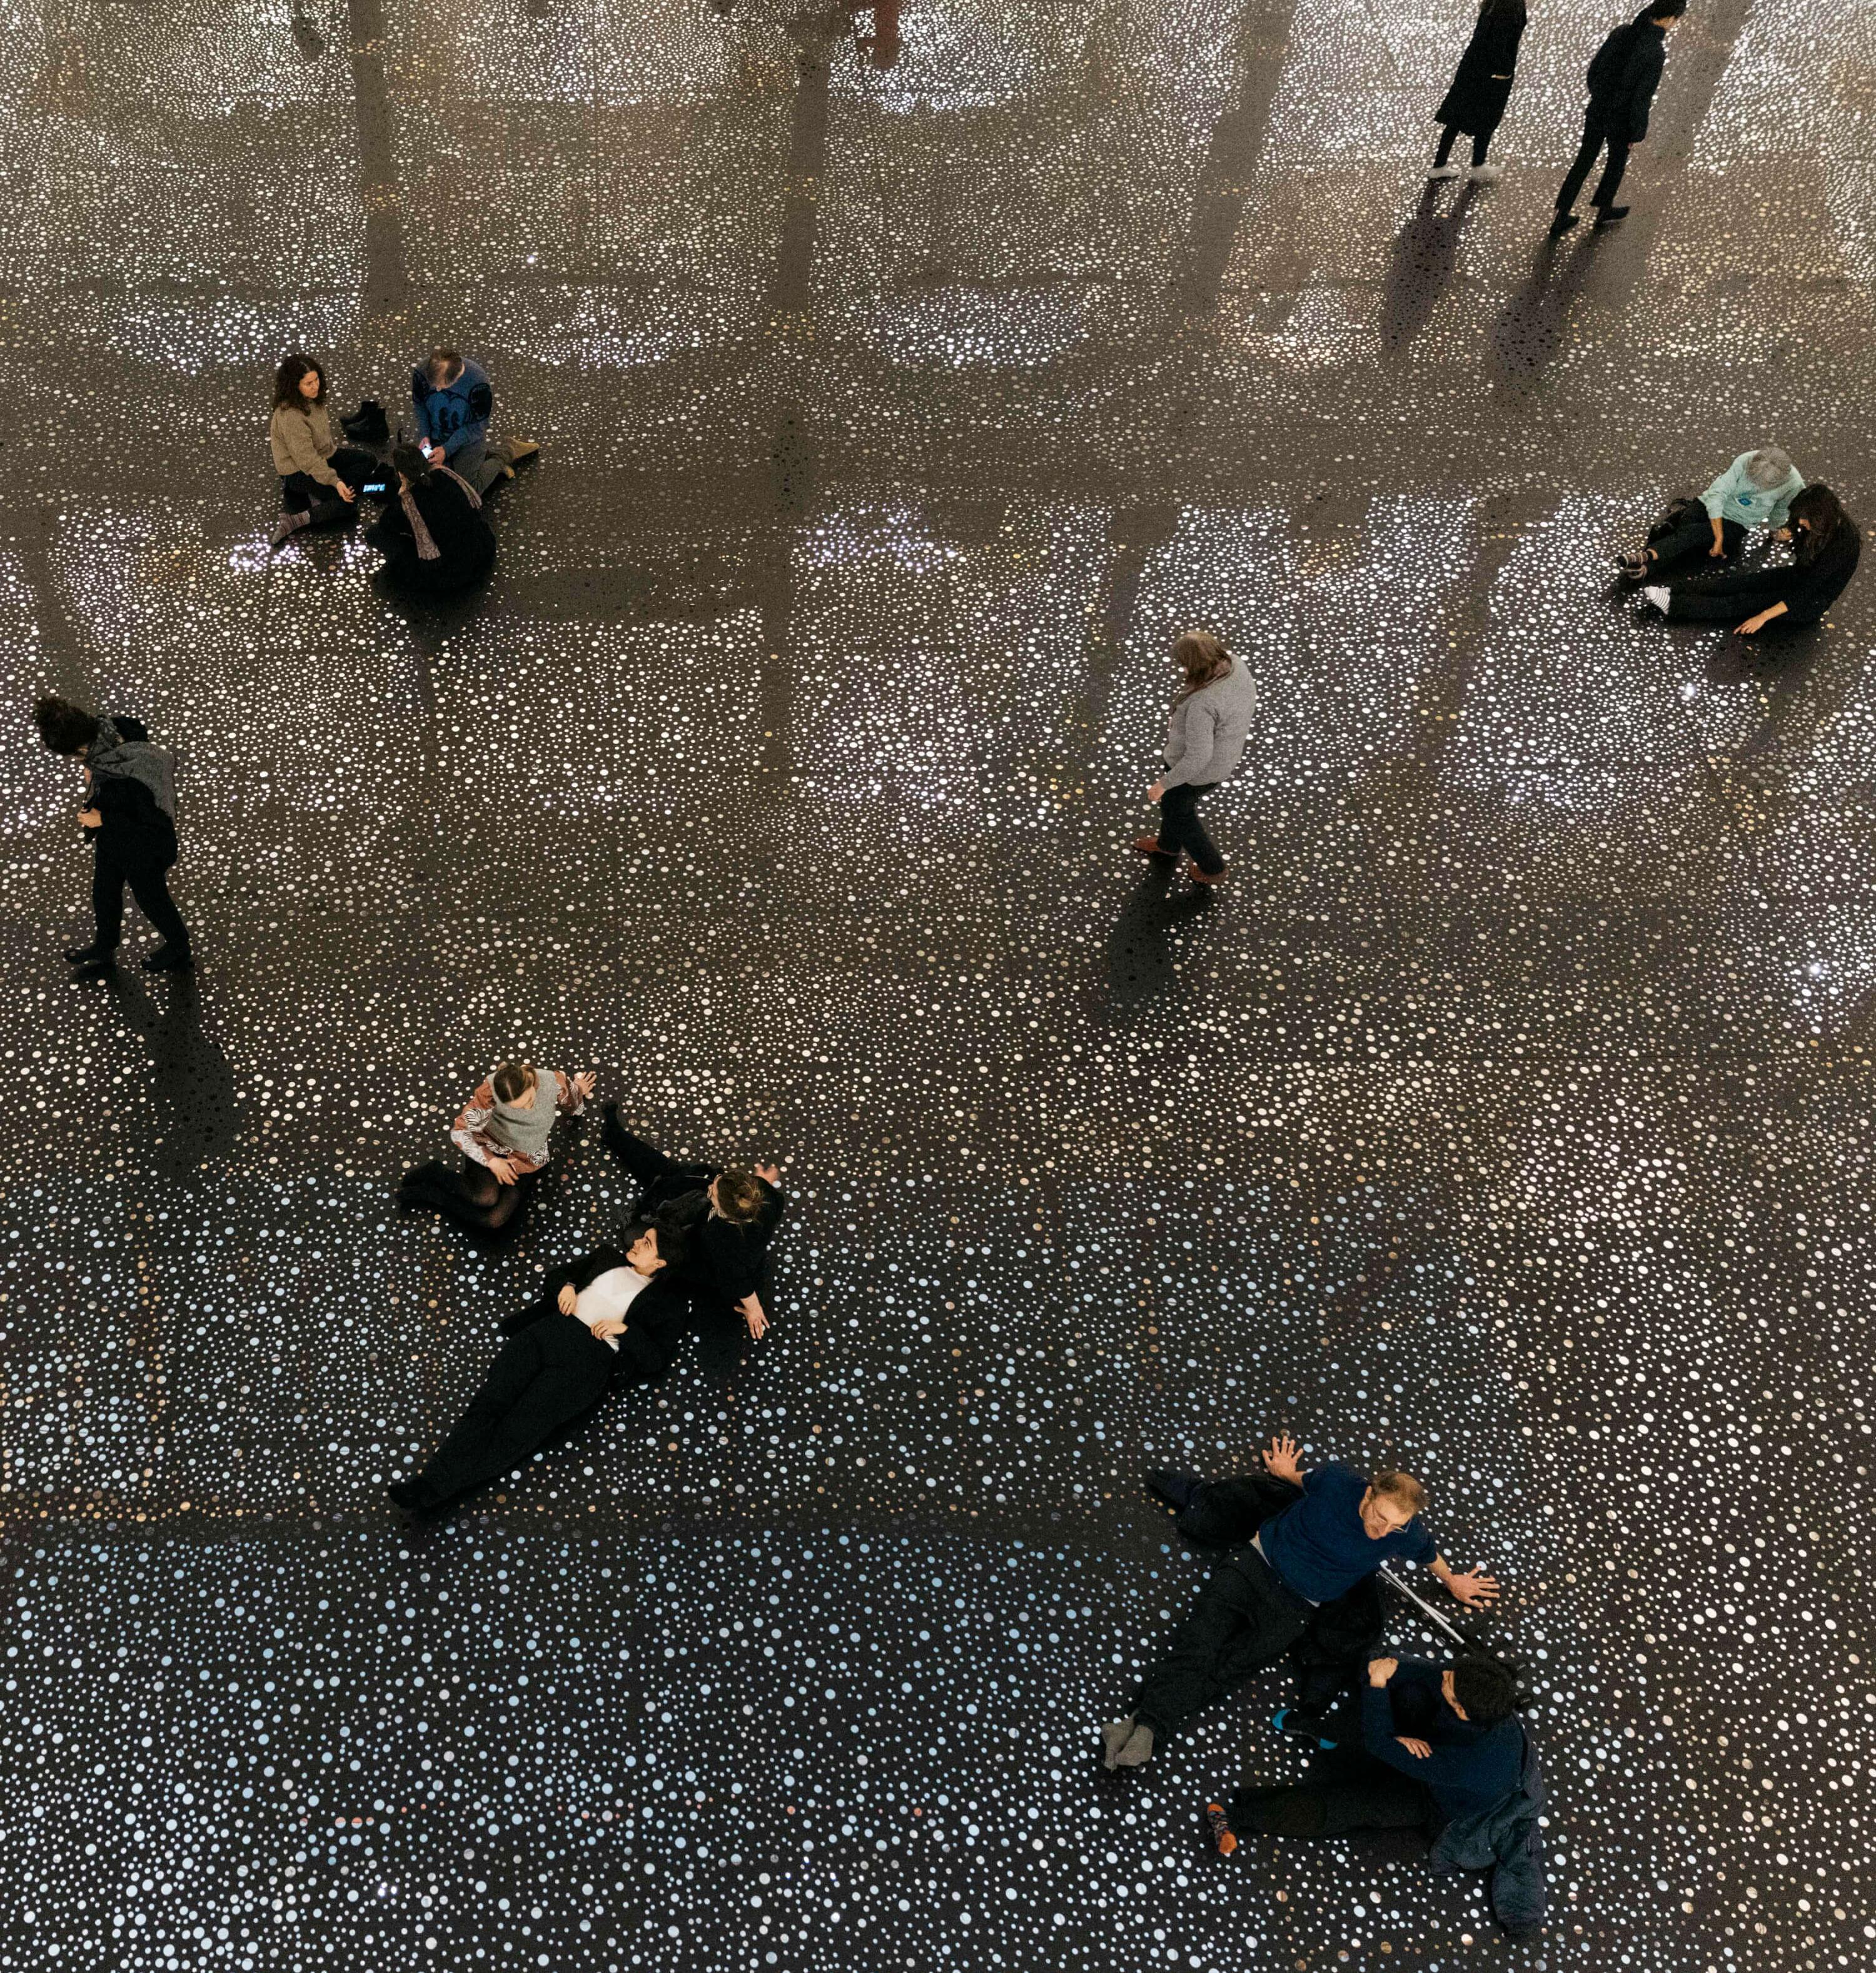 Der Lichthof des Gropius Bau. Der Boden ist bedeckt mit einer reflektierenden Folie als Teil der Ausstellung "RAINBOW SERPENT (VERSION)" von Daniel Boyd. Besucher*innen sitzen und liegen auf der Installation.